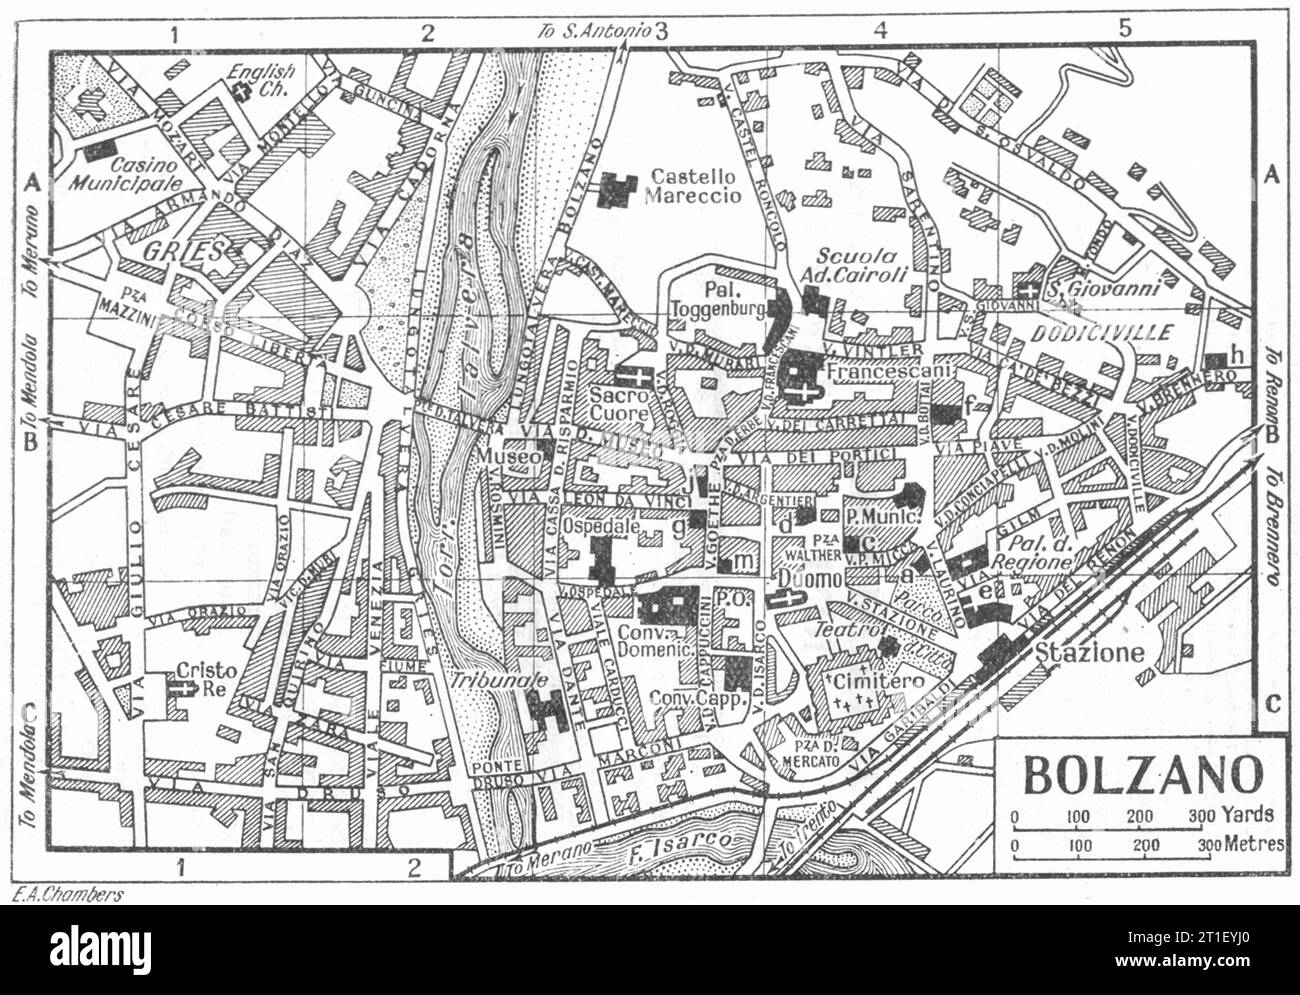 BOLZANO plan de ville. Italie 1953 ancienne carte vintage Banque D'Images